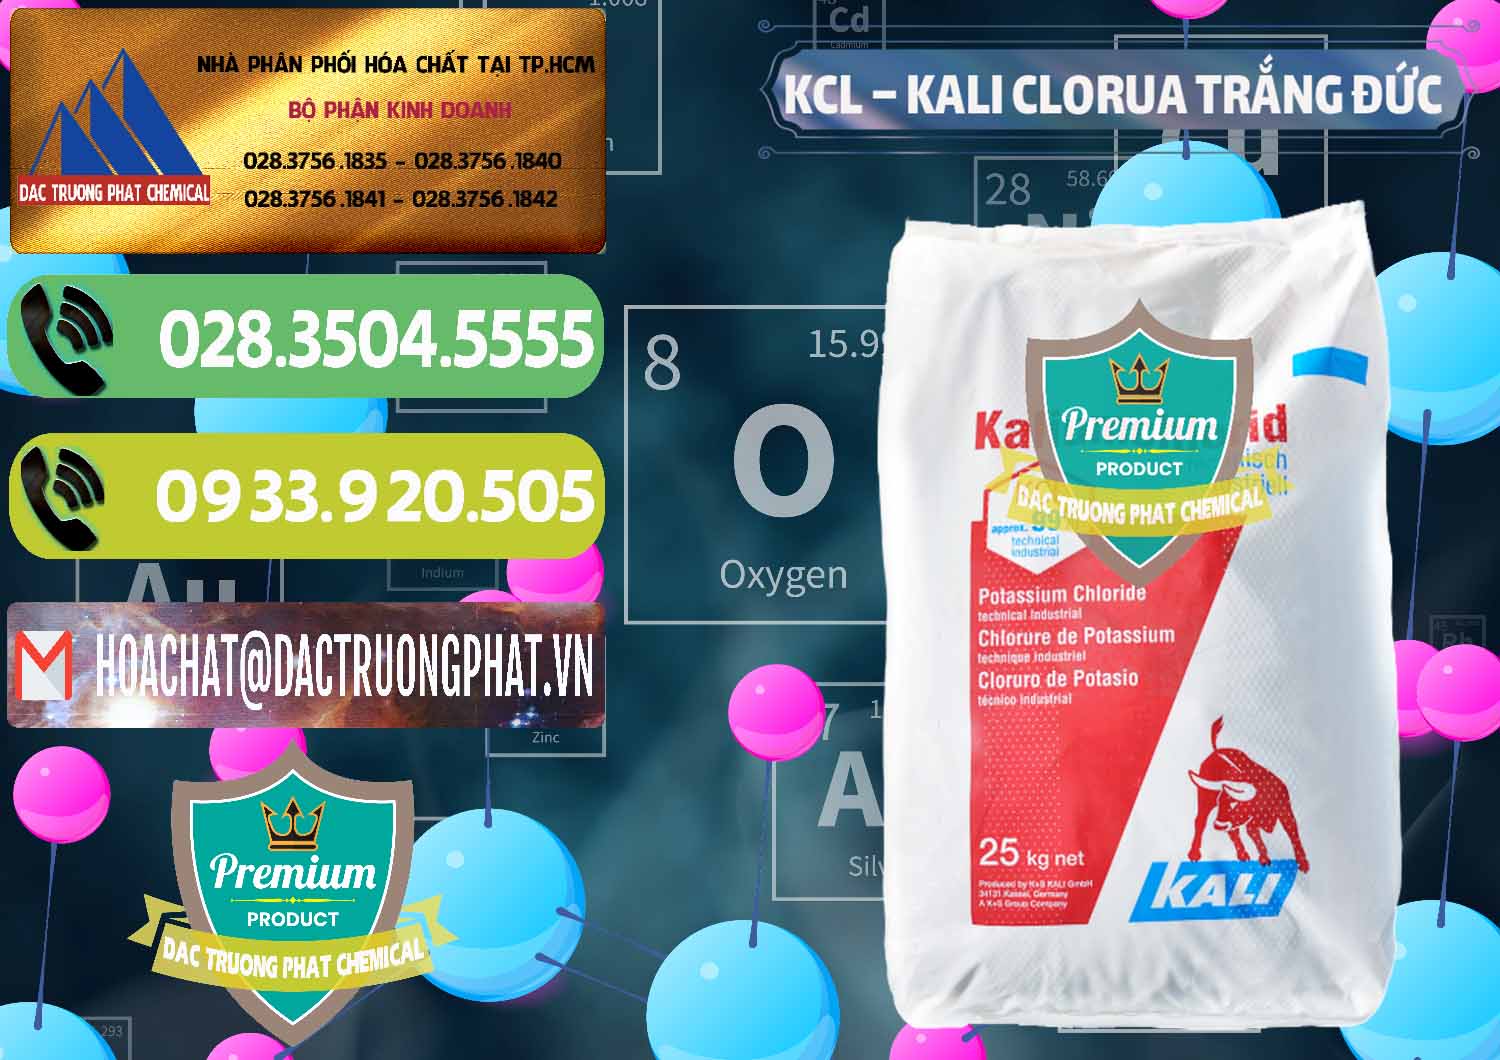 Công ty bán - cung ứng KCL – Kali Clorua Trắng Đức Germany - 0086 - Cty cung cấp & bán hóa chất tại TP.HCM - hoachatmientay.vn